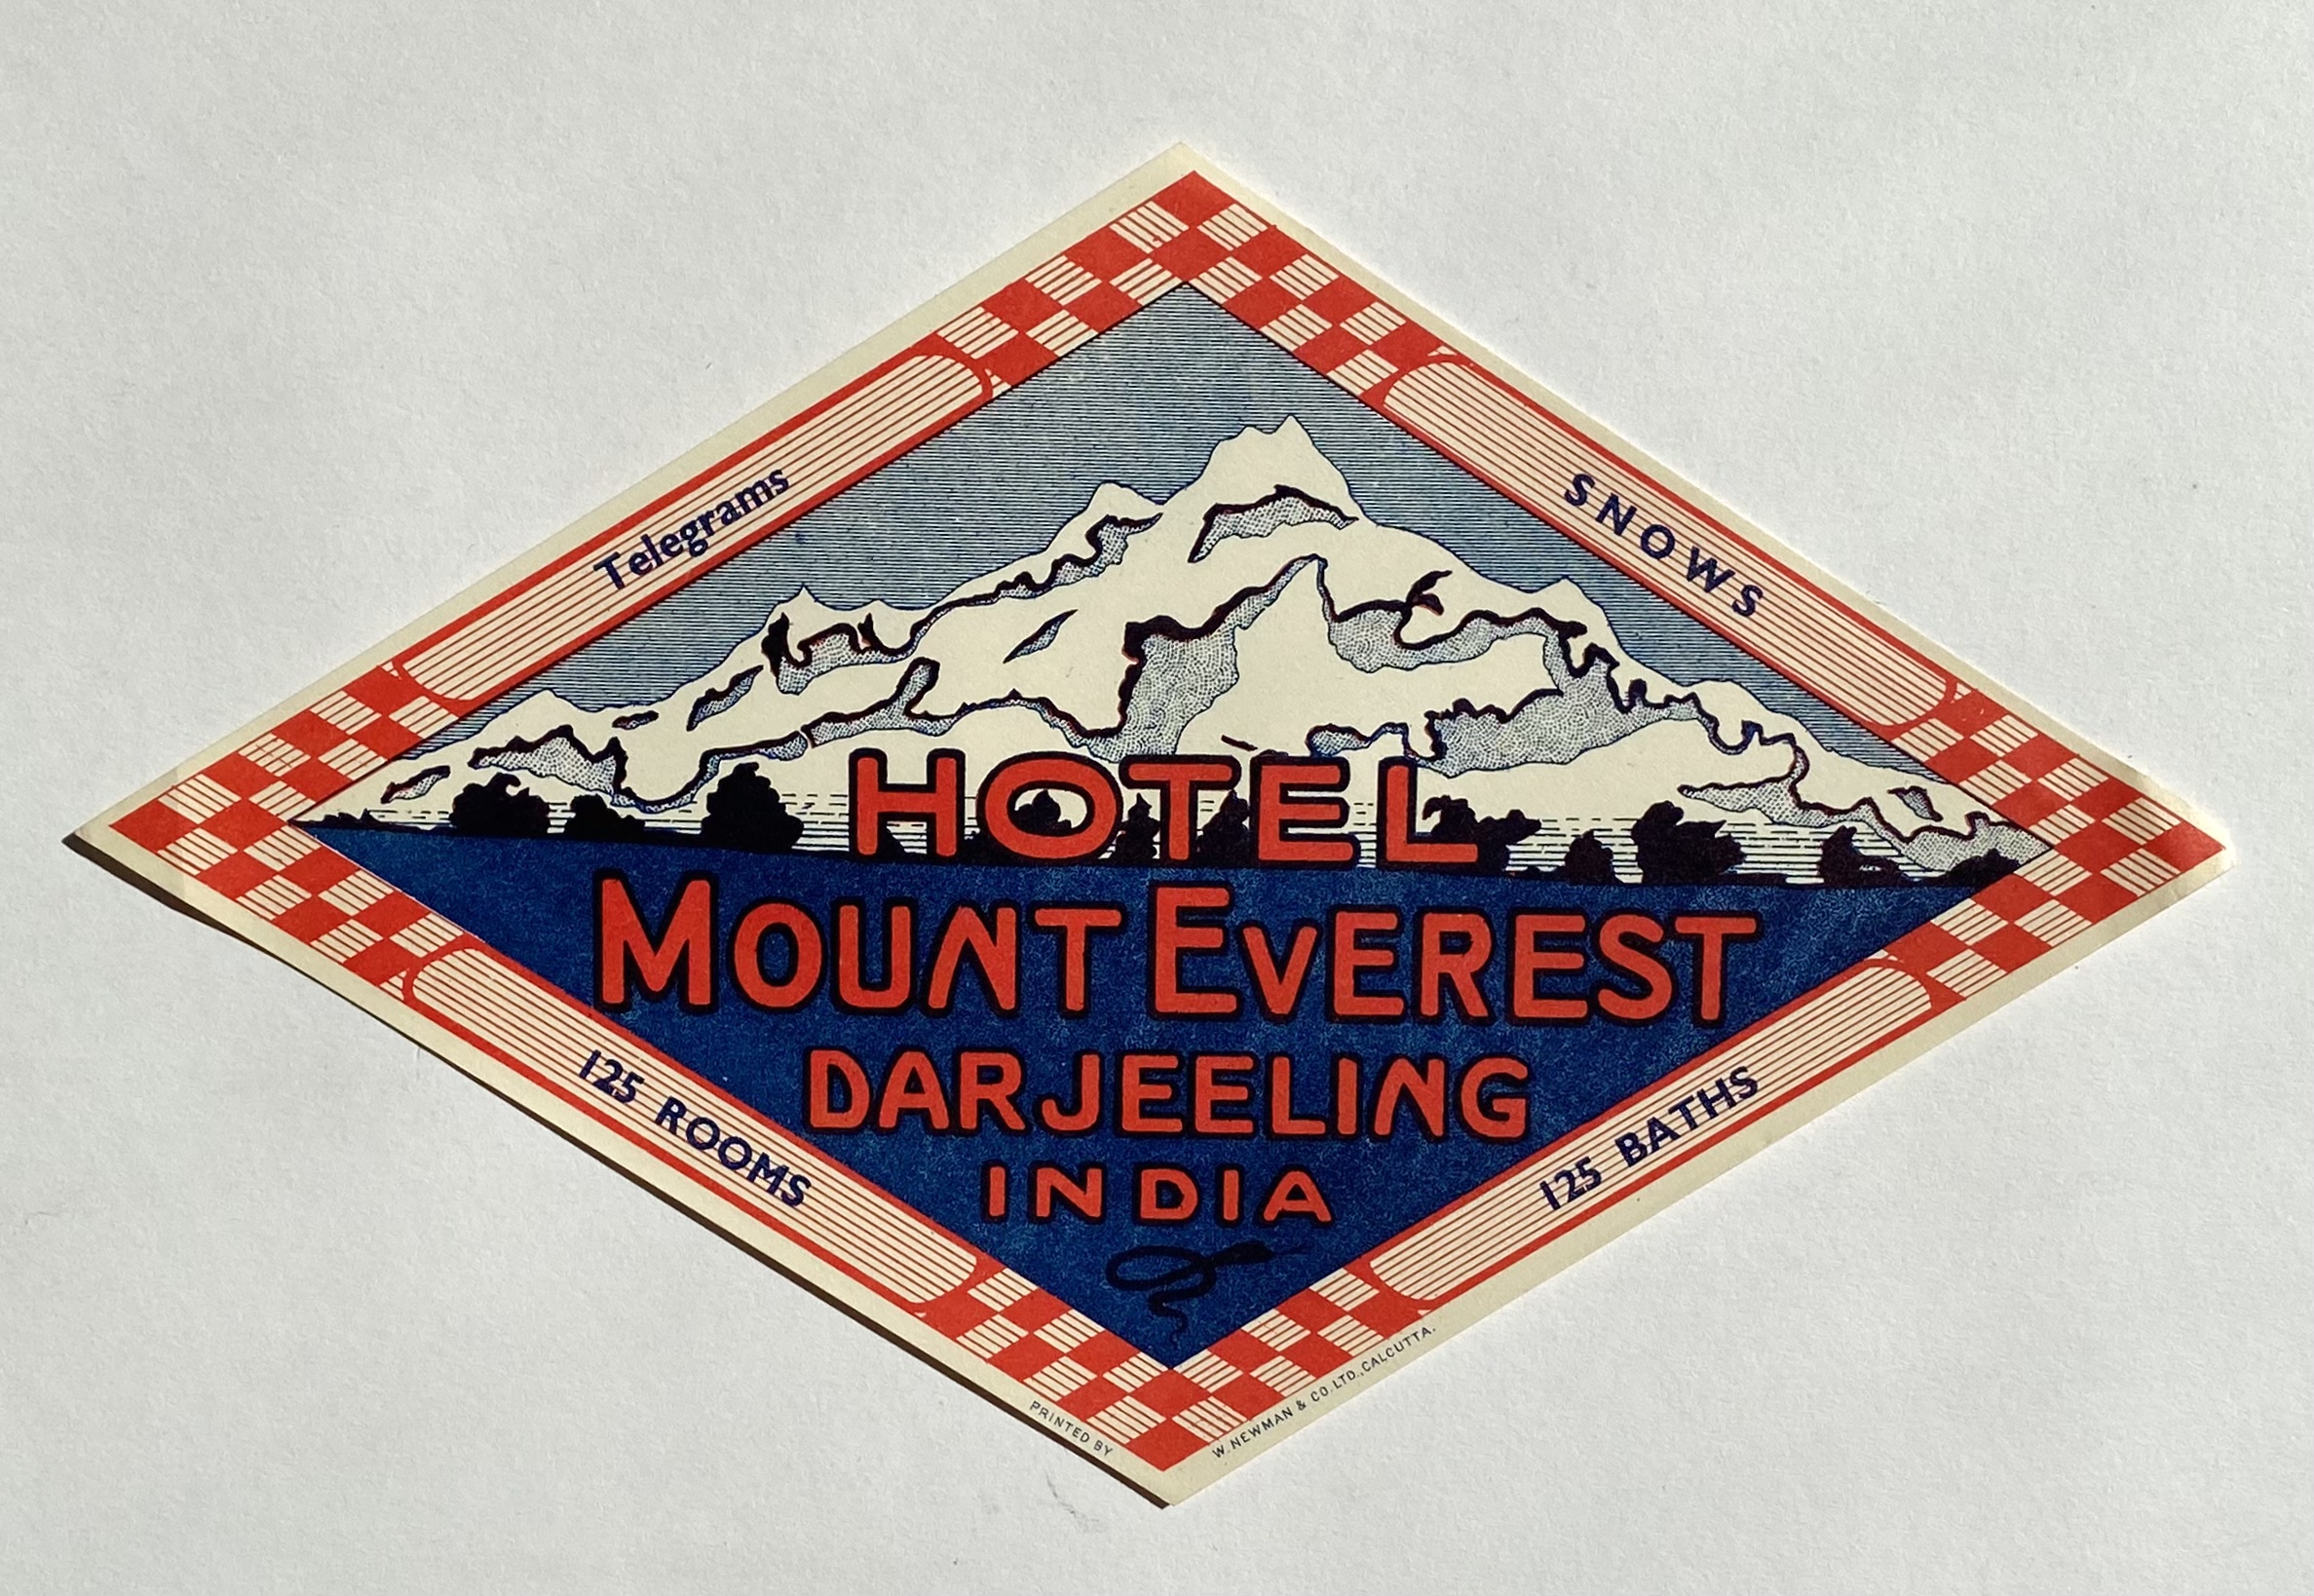 Original Vintage Luggage Label - Hotel Mount Everest, Darjeeling India:  (1950) 1st Edition Art / Print / Poster